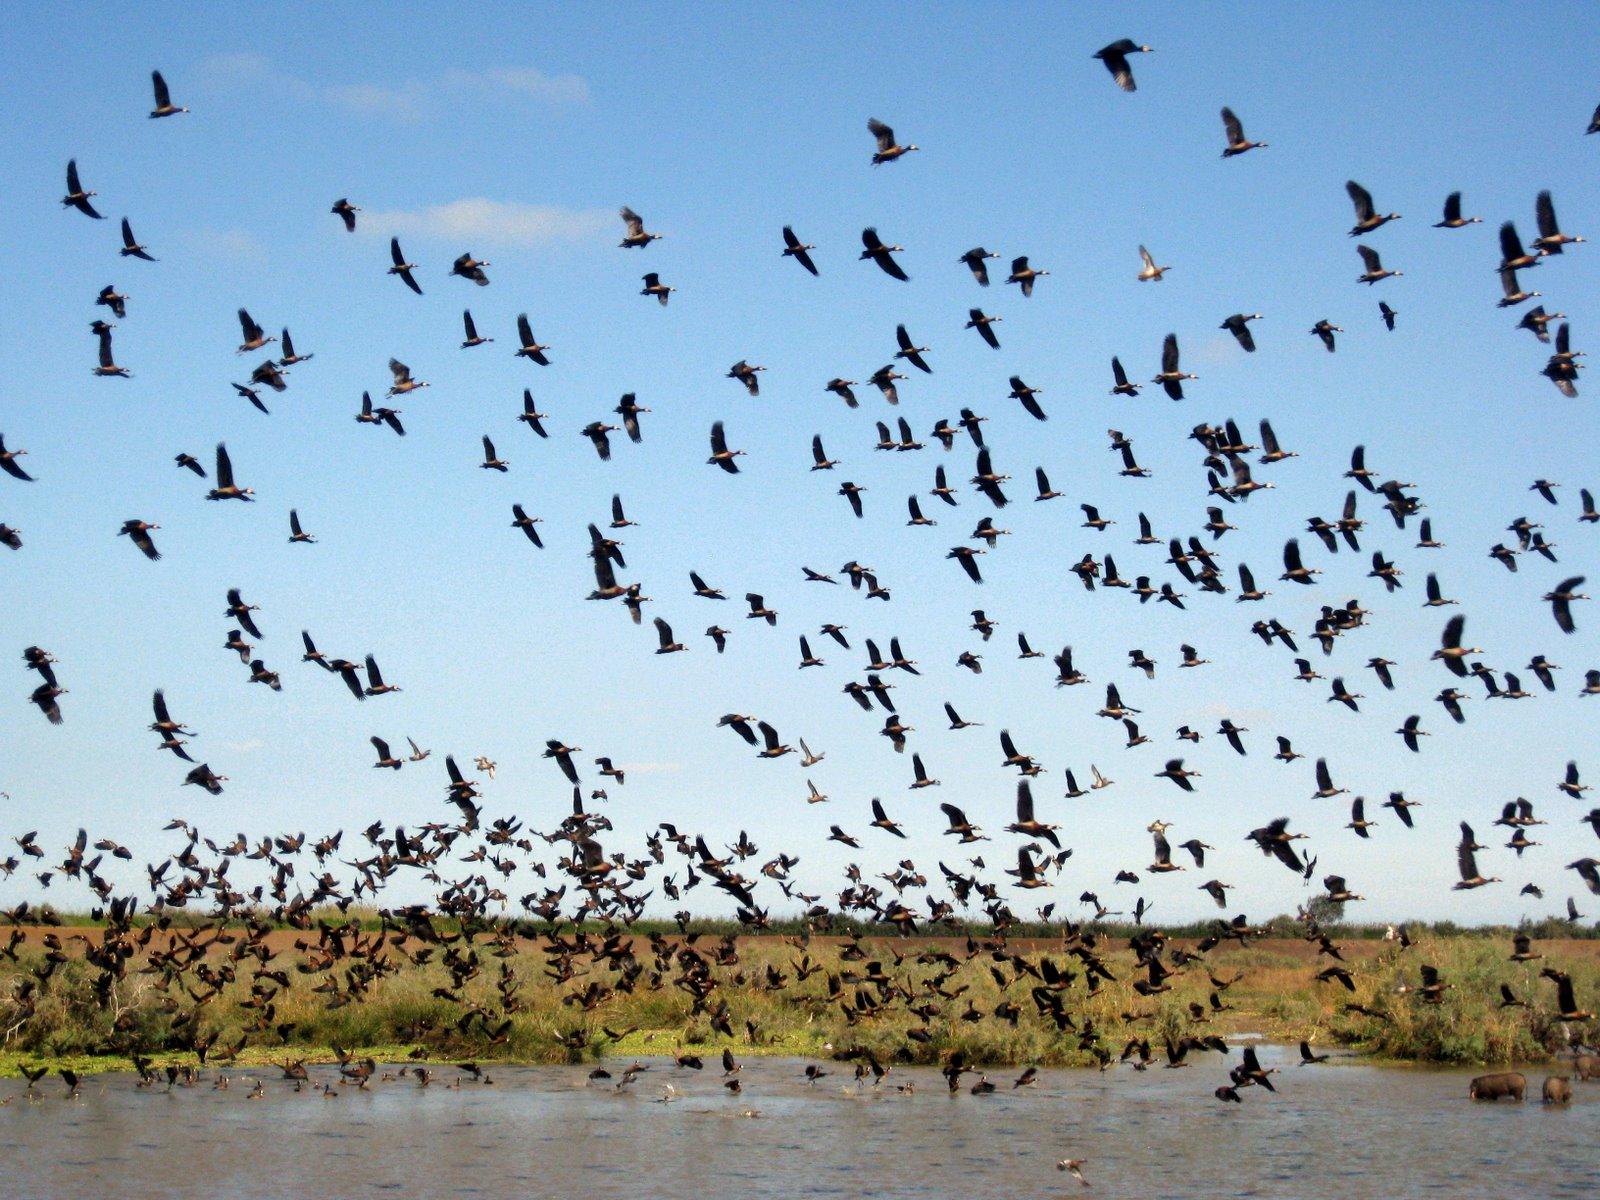 朱賈國家鳥類保護區 Djoudj National Bird Sanctuary